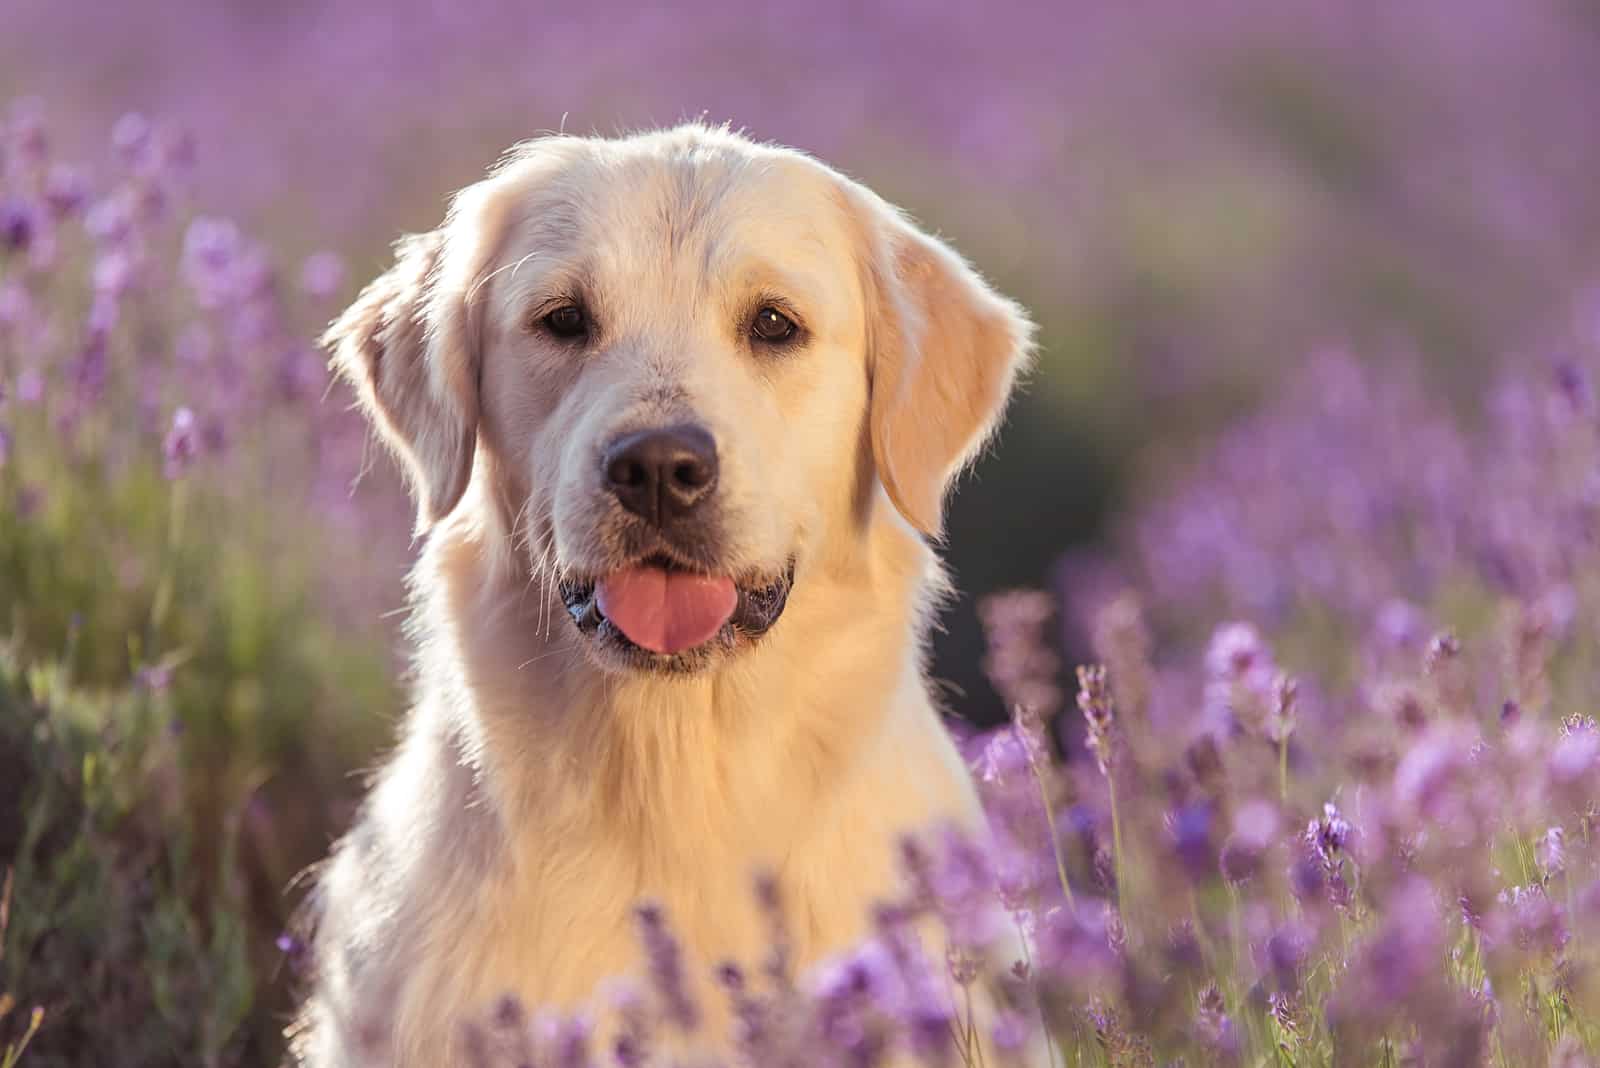 Field Golden Retriever in field of lavender